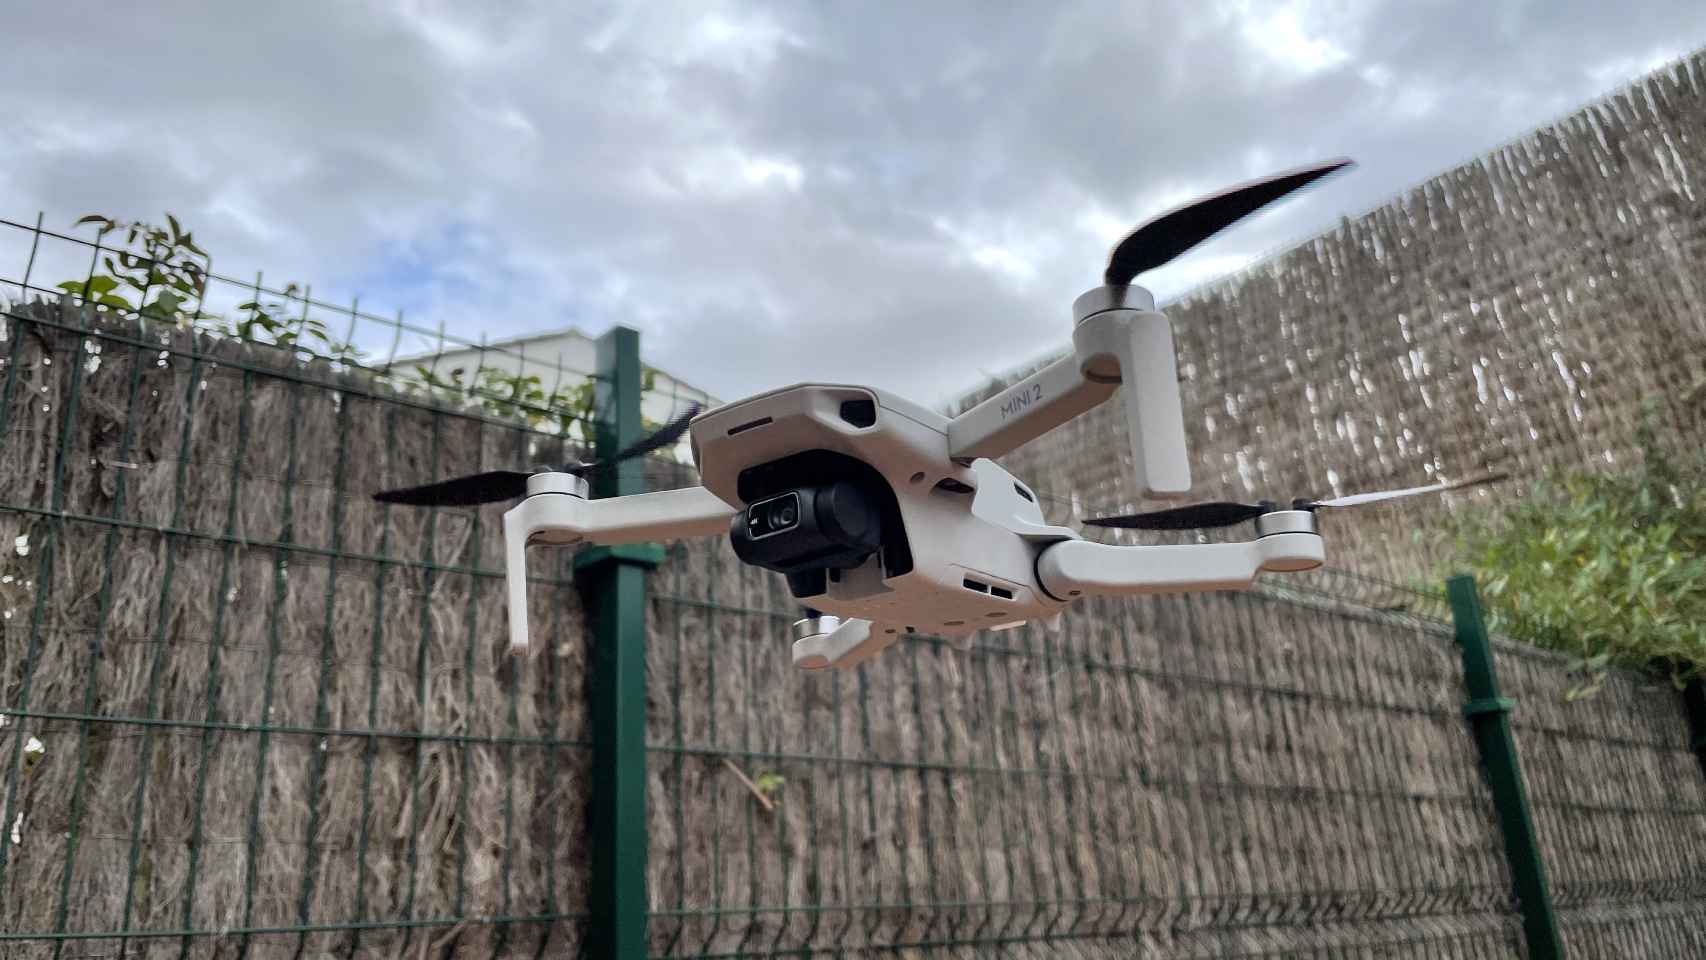 Probamos el DJI Mini 2, un dron 4K tan pequeño que lo puedes volar en ciudad